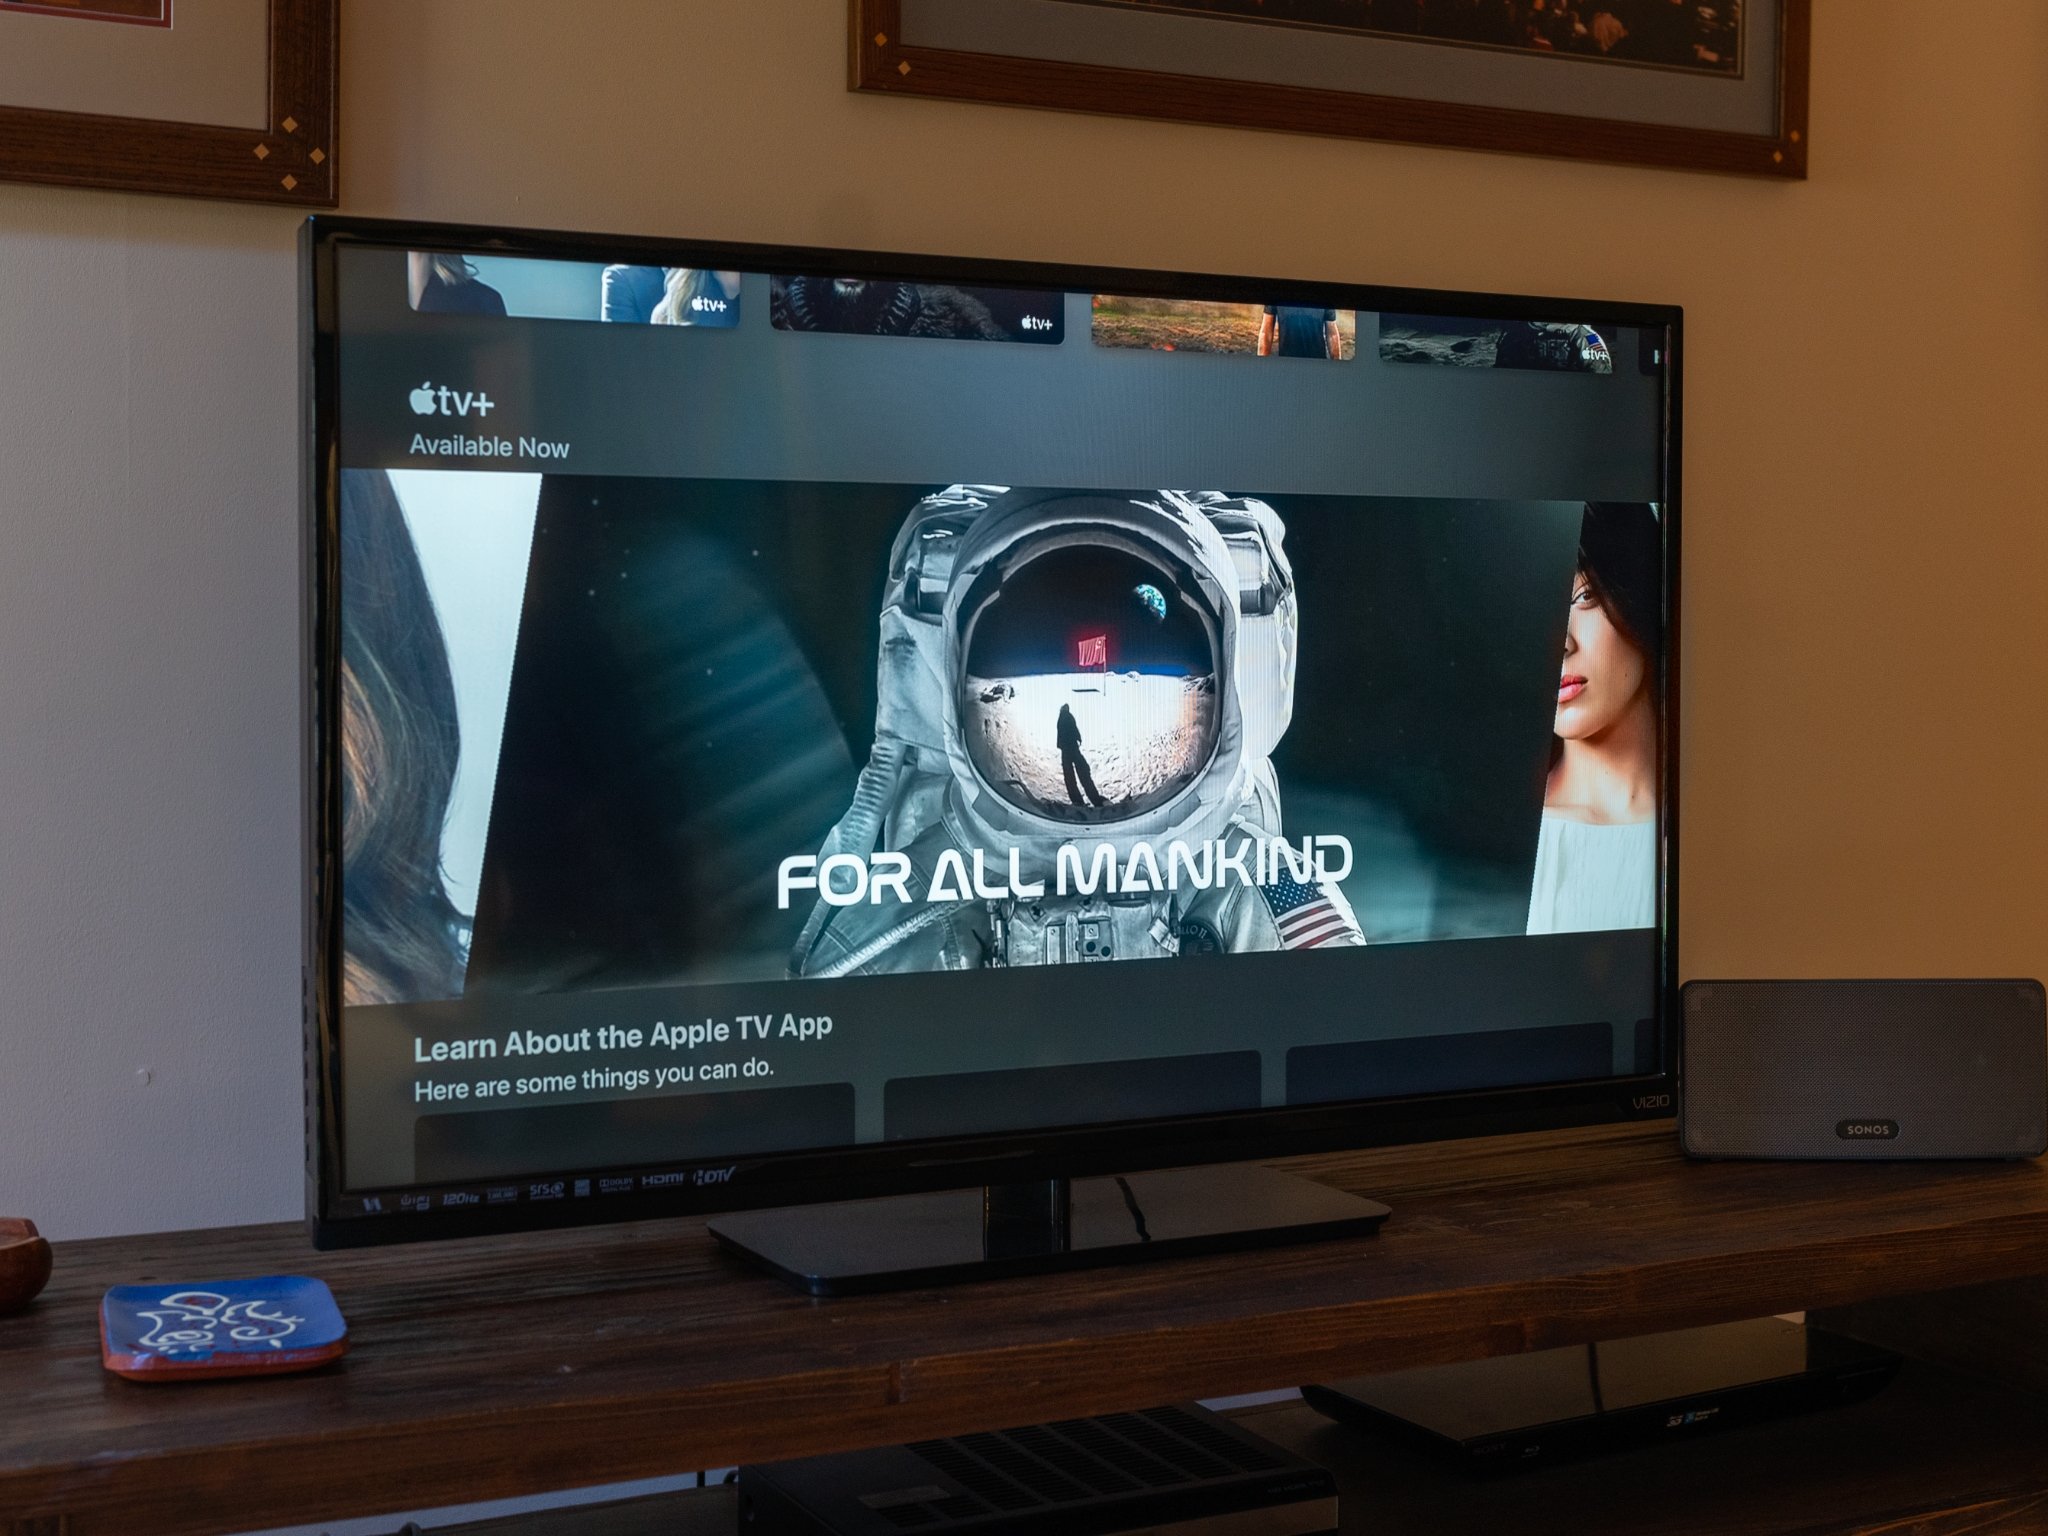 offentlig Børnepalads uendelig What TVs have Apple's TV app? | iMore